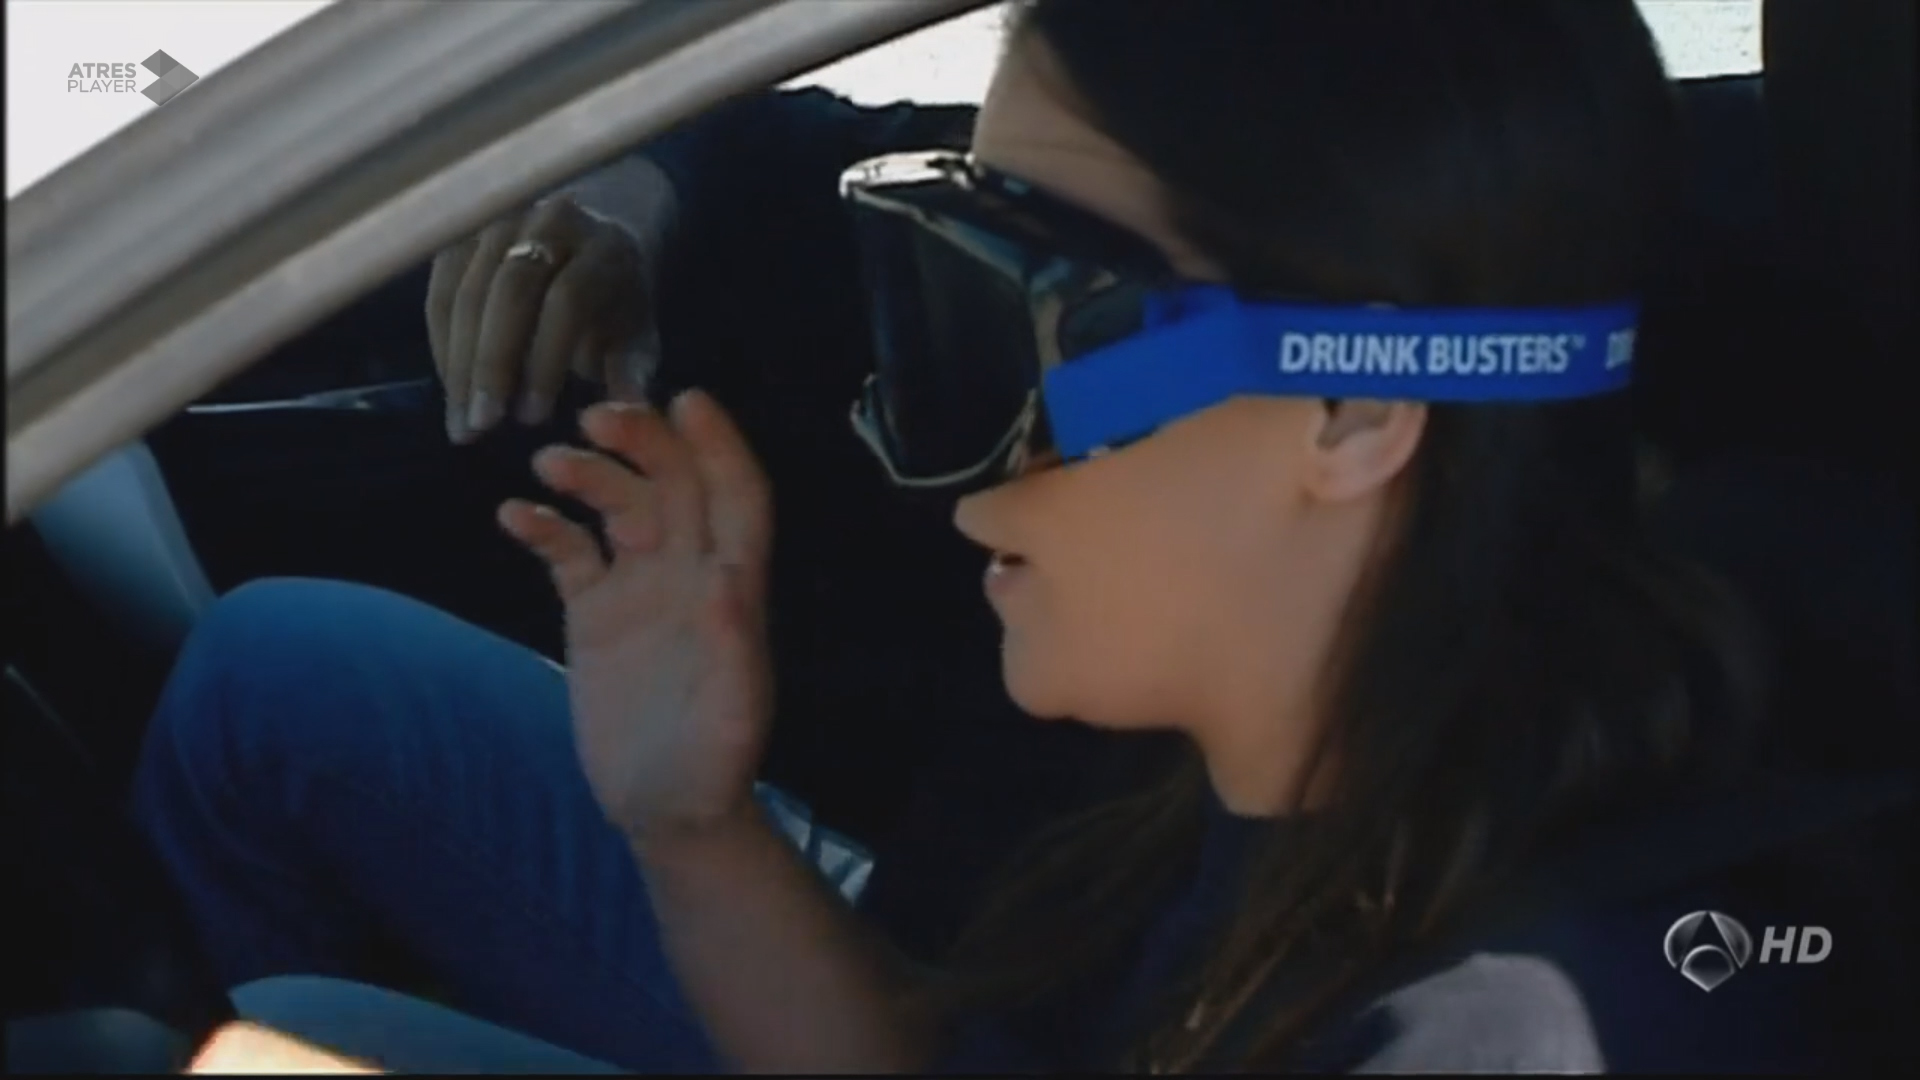 El consumo de alcohol deteriora la calidad de la visión, impidiendo una conducción normal